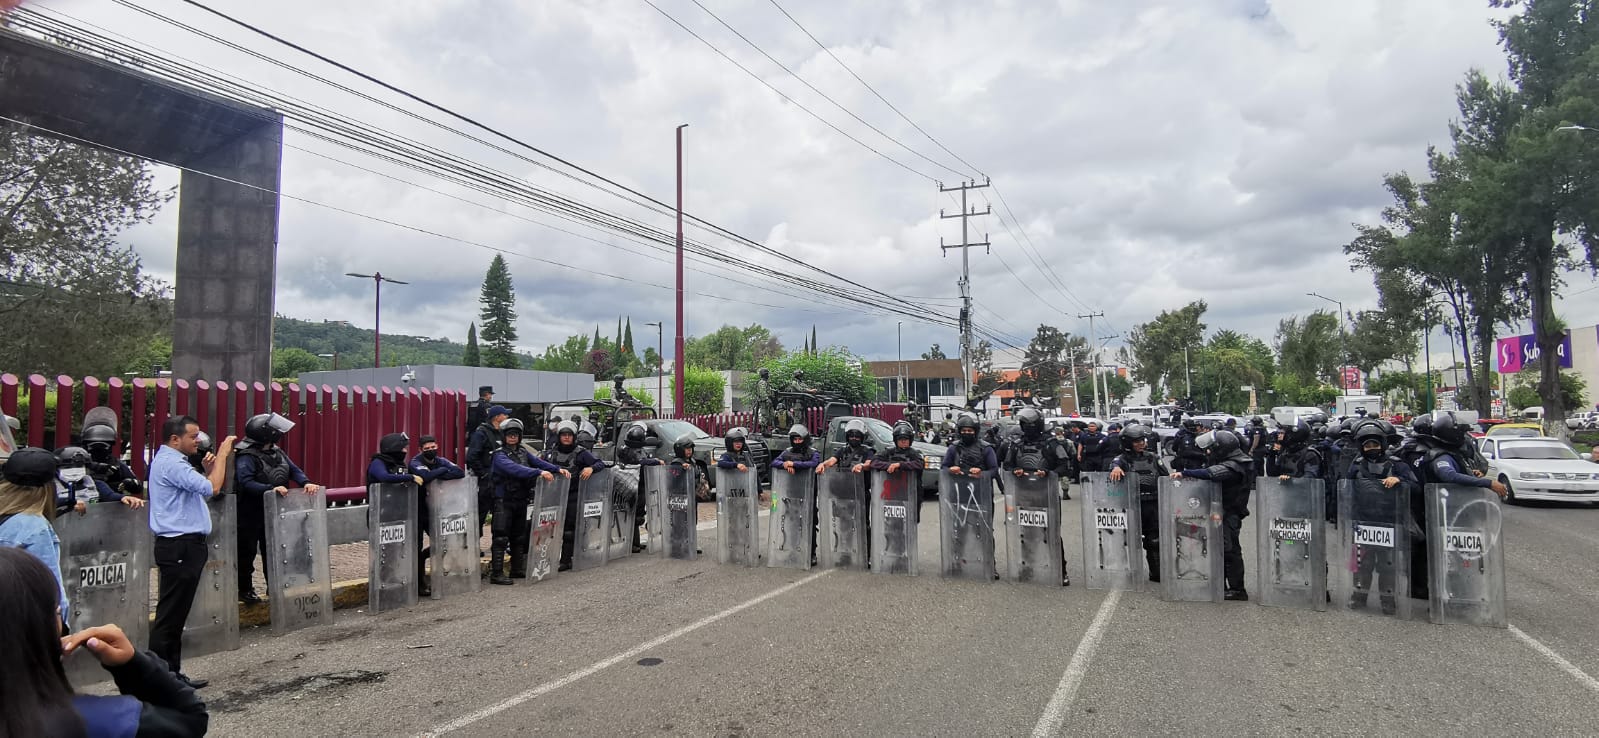 Ingresan los 164 detenidos en Tiamba al Cereso David Franco Rodríguez en Charo